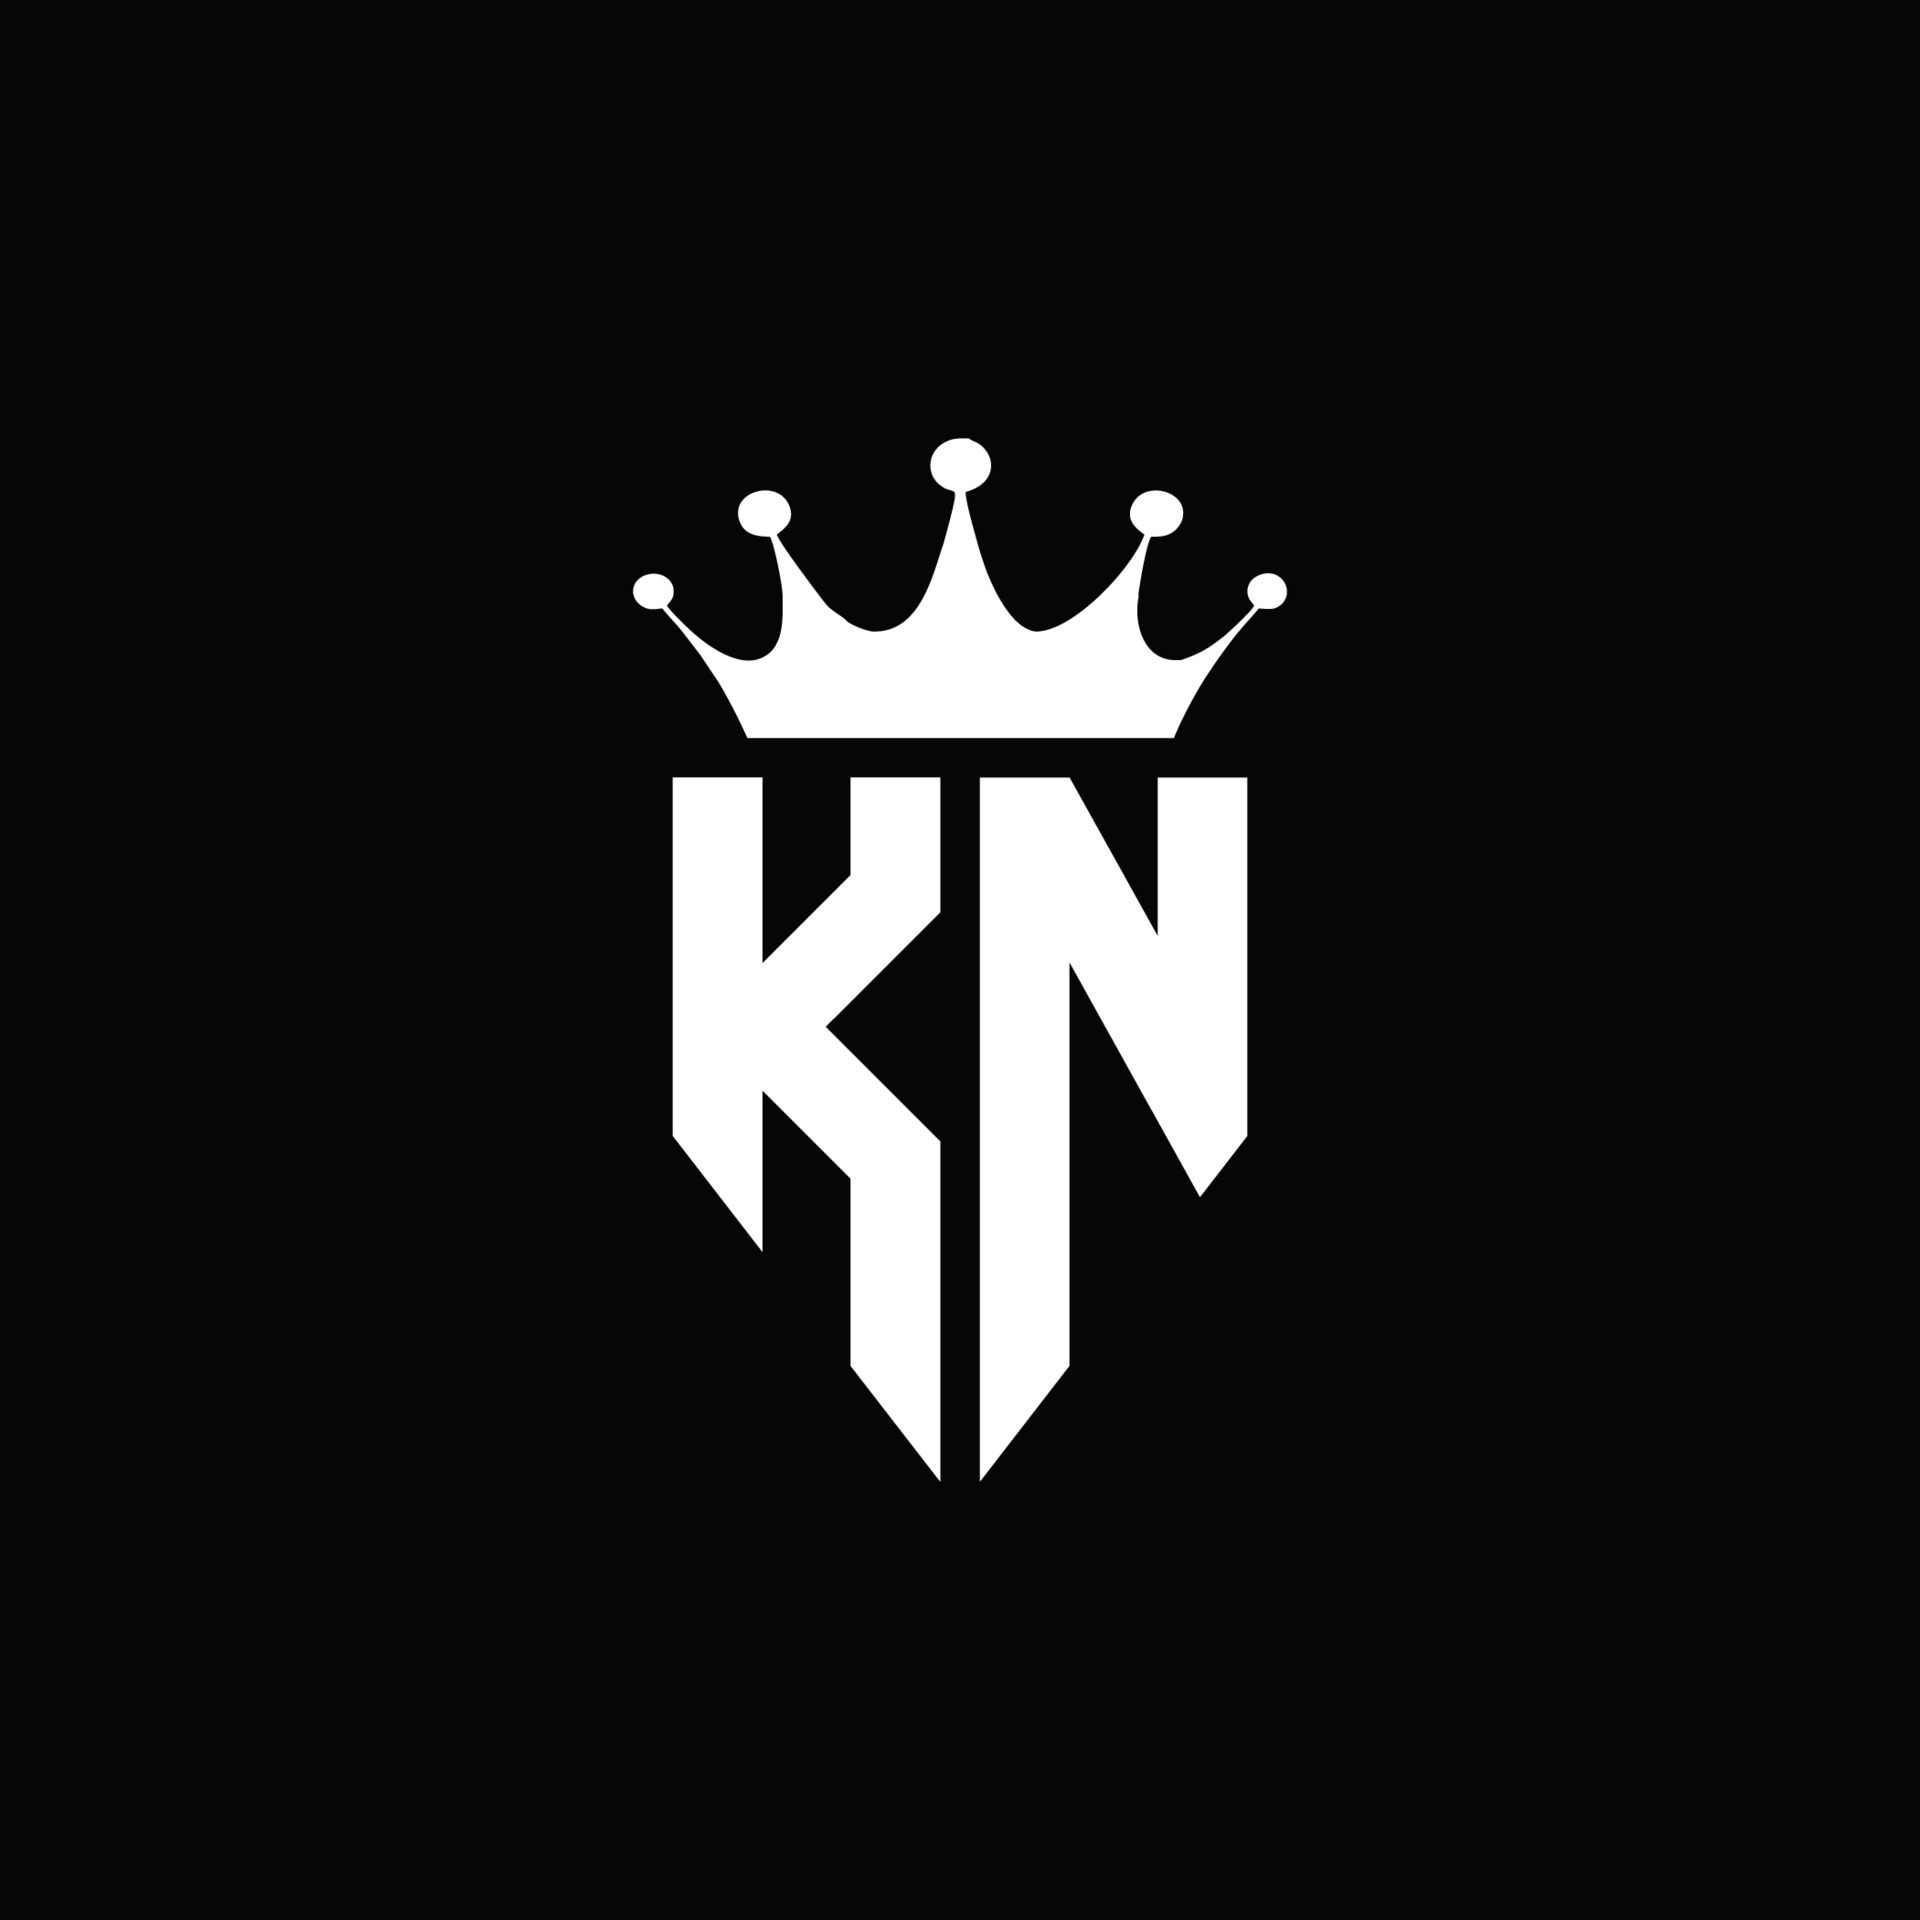 Share 91+ kn logo best 